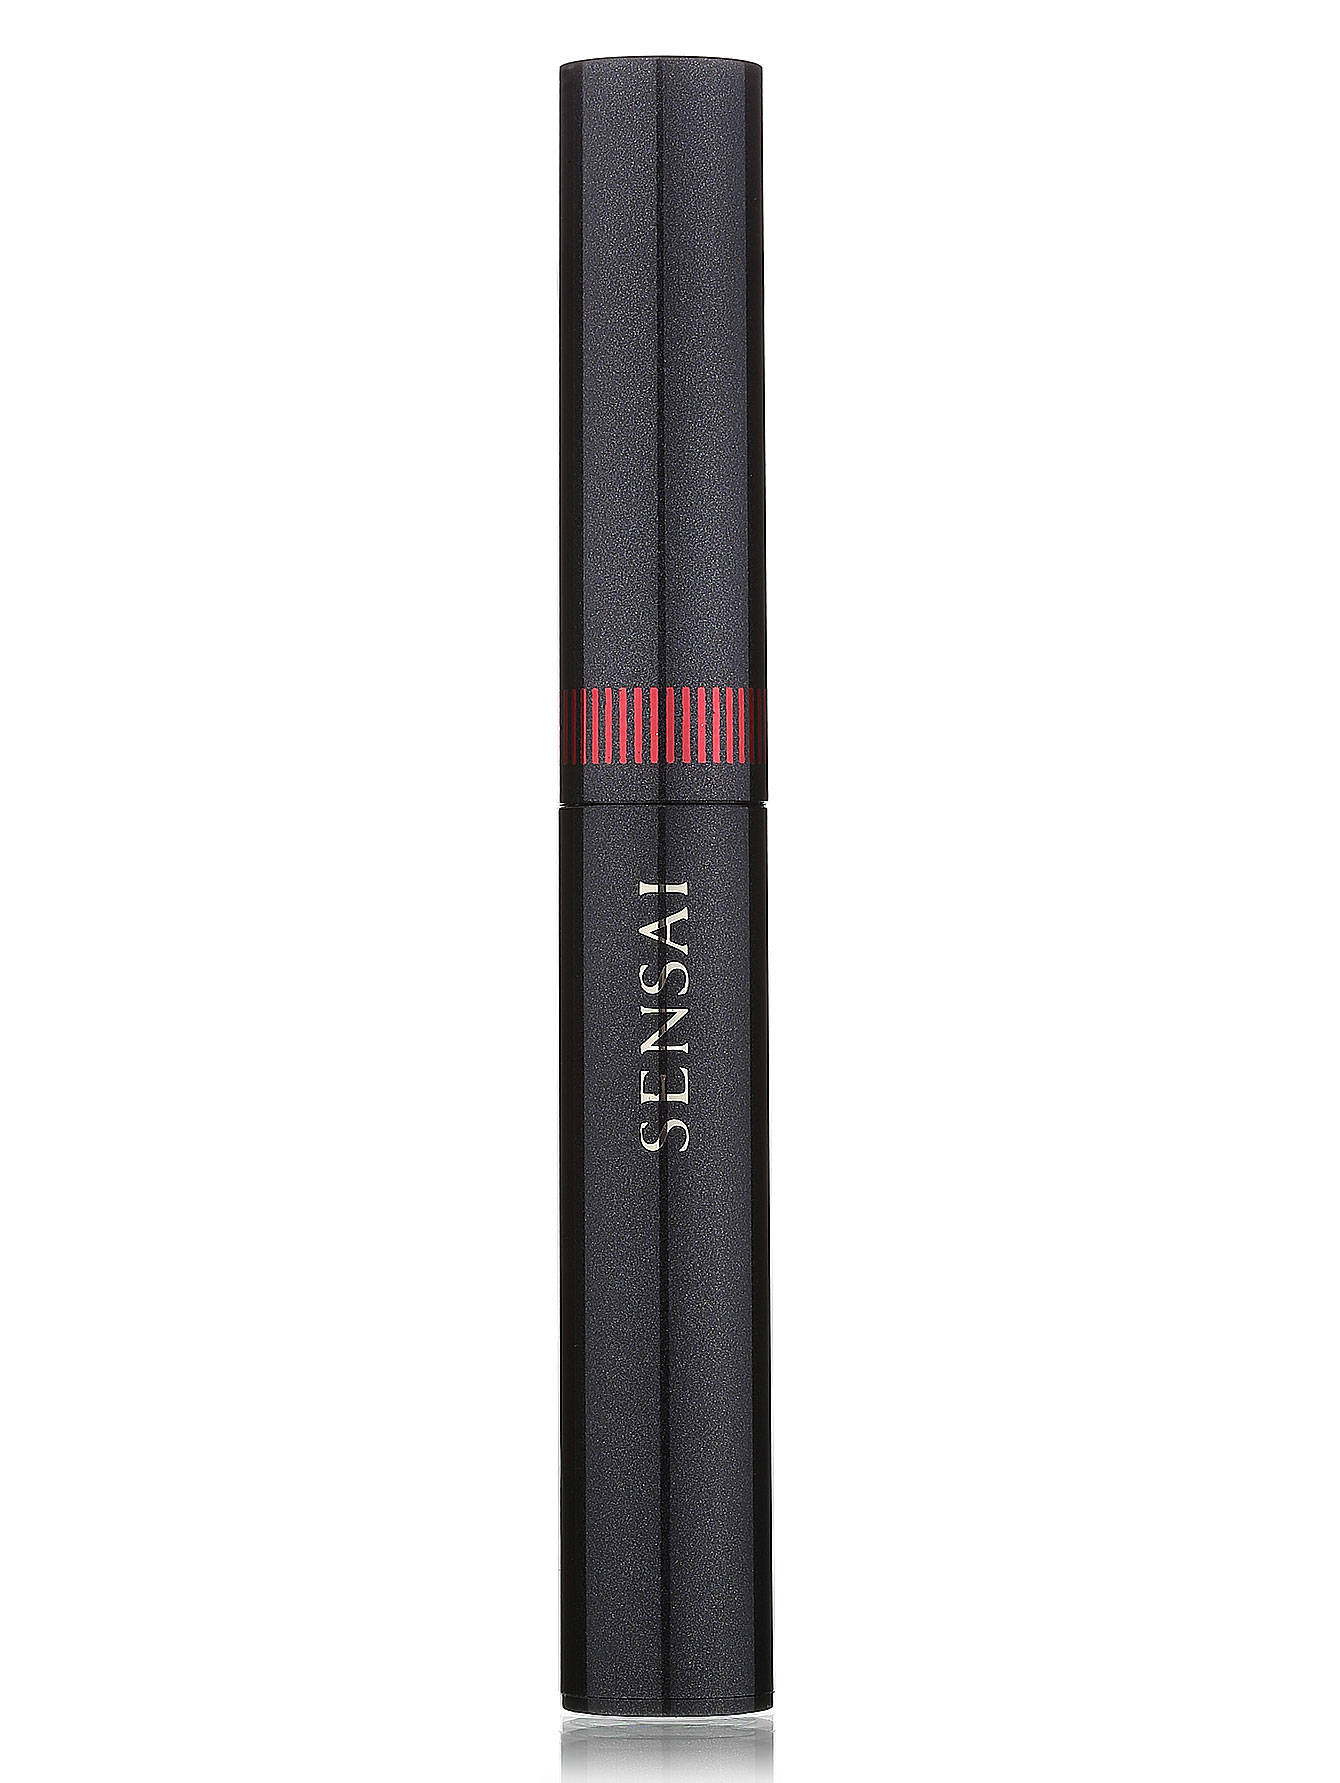 Помада-карандаш для губ - №06, Sensai Silky Design - Общий вид